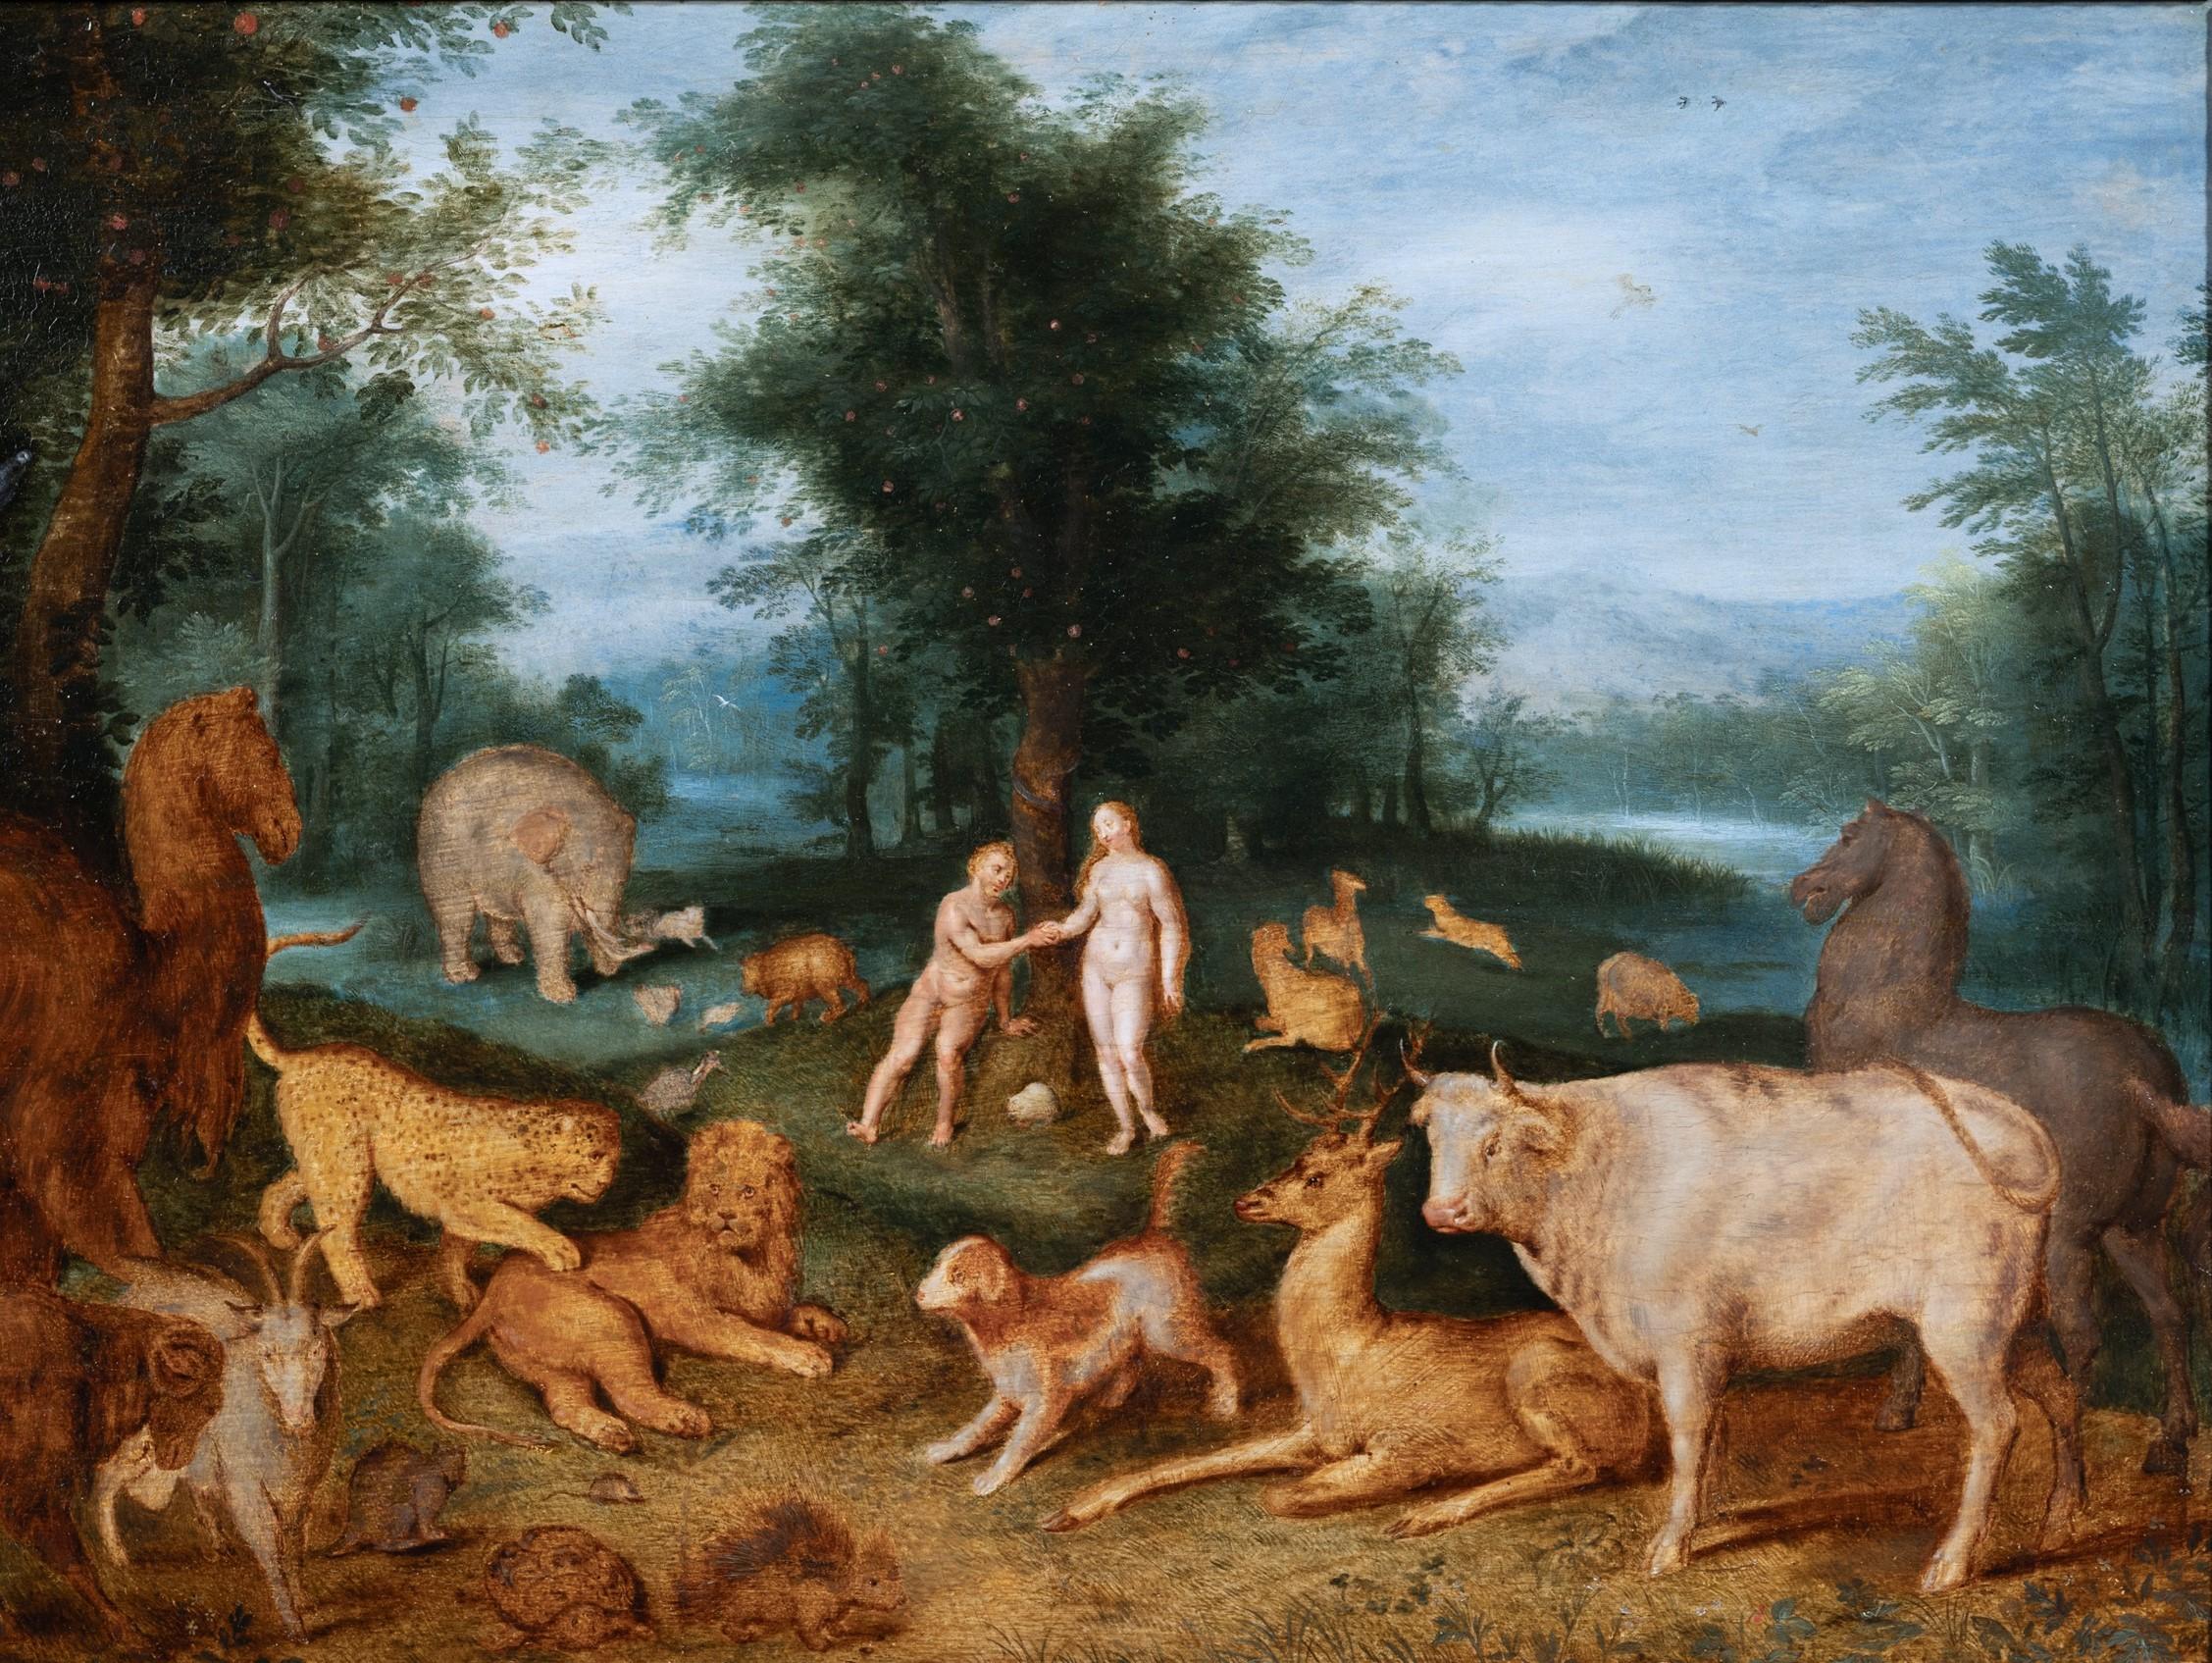 Adam et Ève au paradis, studio de Jan Brueghel le Jeune, 17e siècle - Painting de Studio of Jan Brueghel the Younger